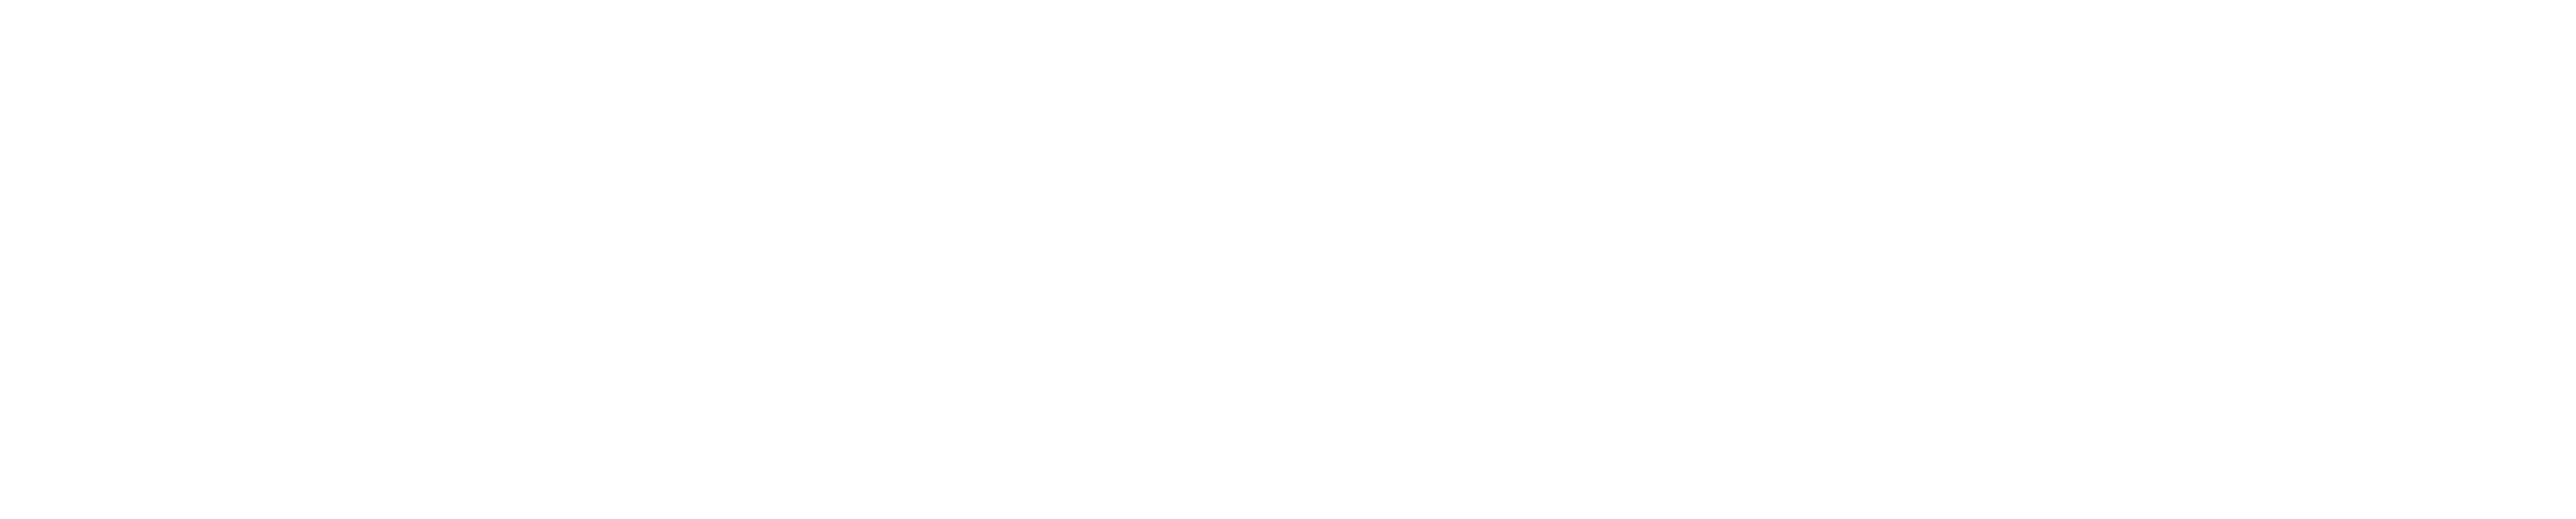 Humbert Road Dentistry